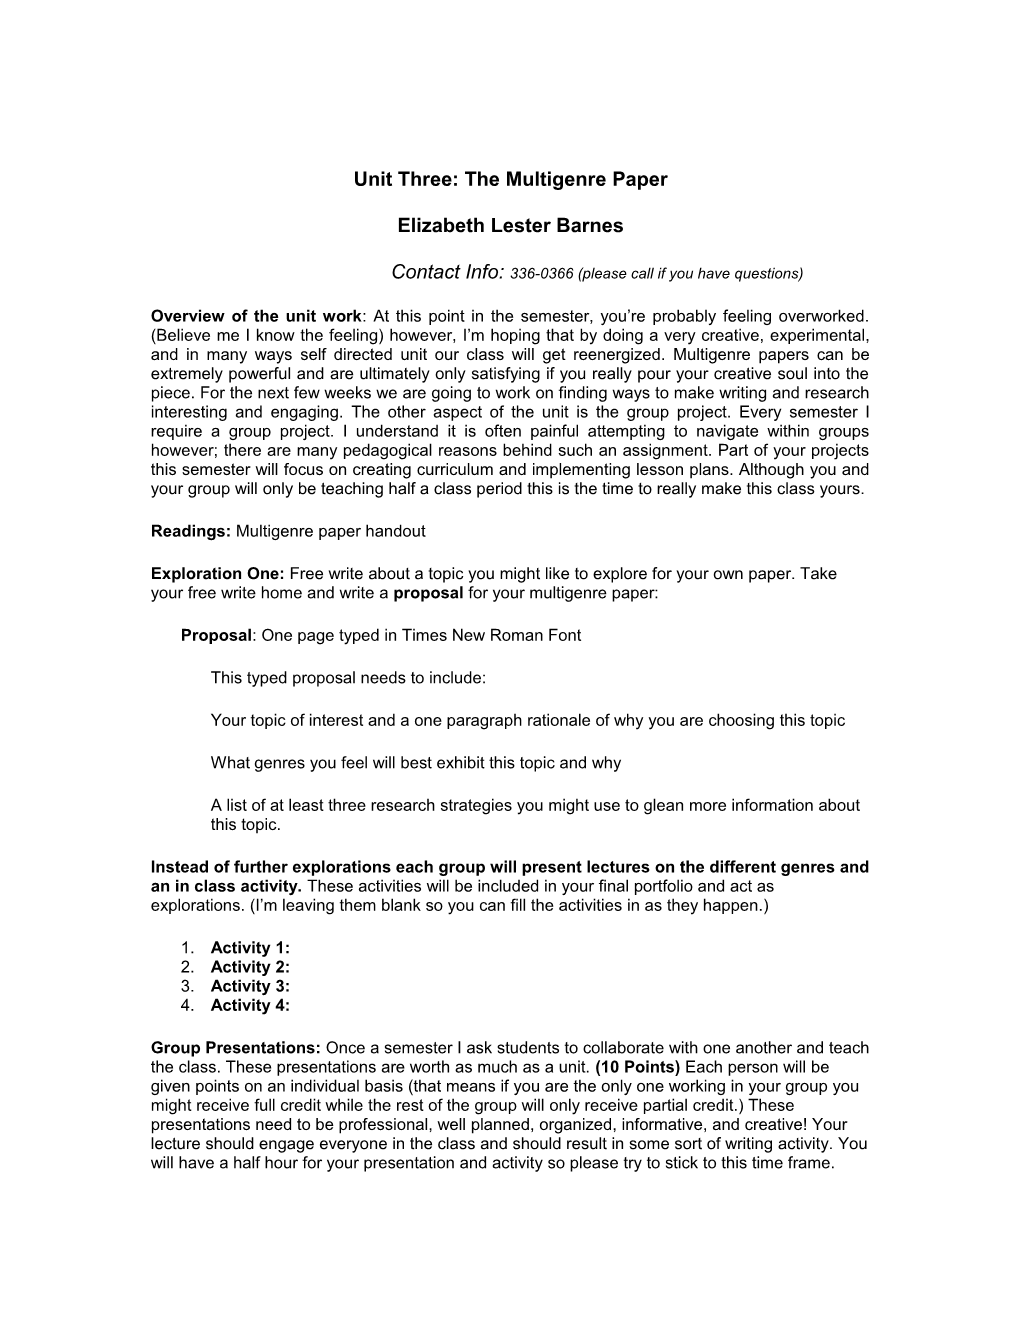 Unit Three: the Multigenre Paper